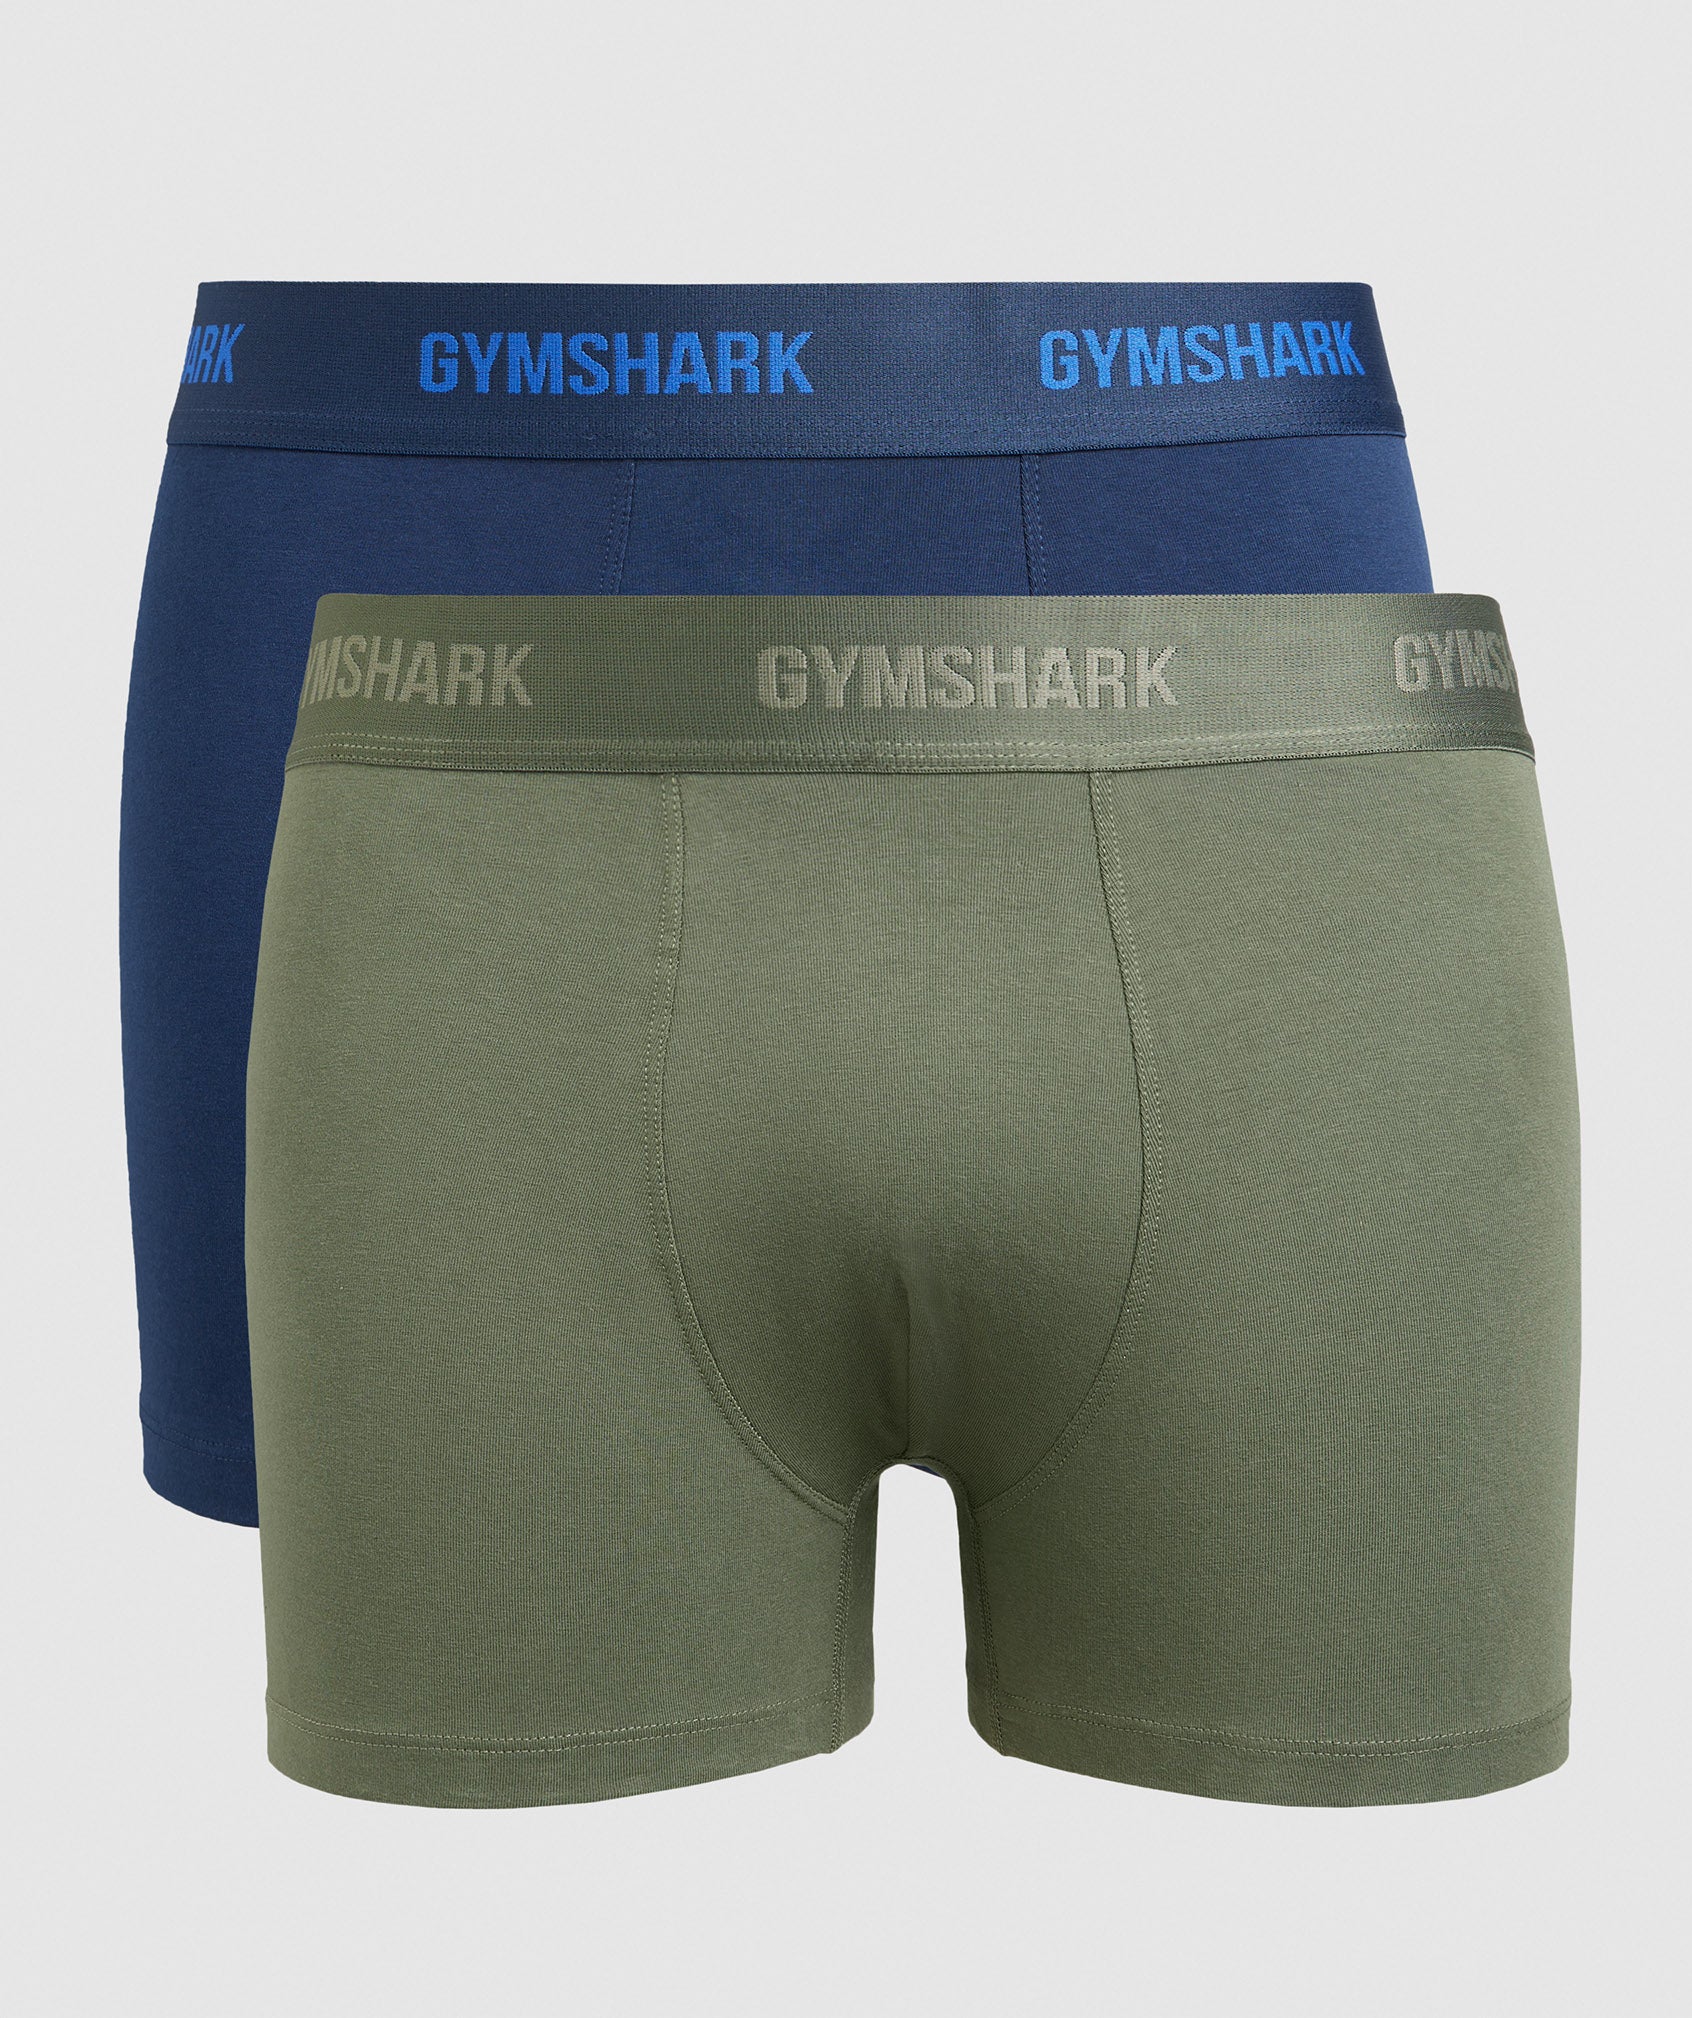 GymShark GymShark Mens Trunks Two Pack BLUE-GREEN 3681-25